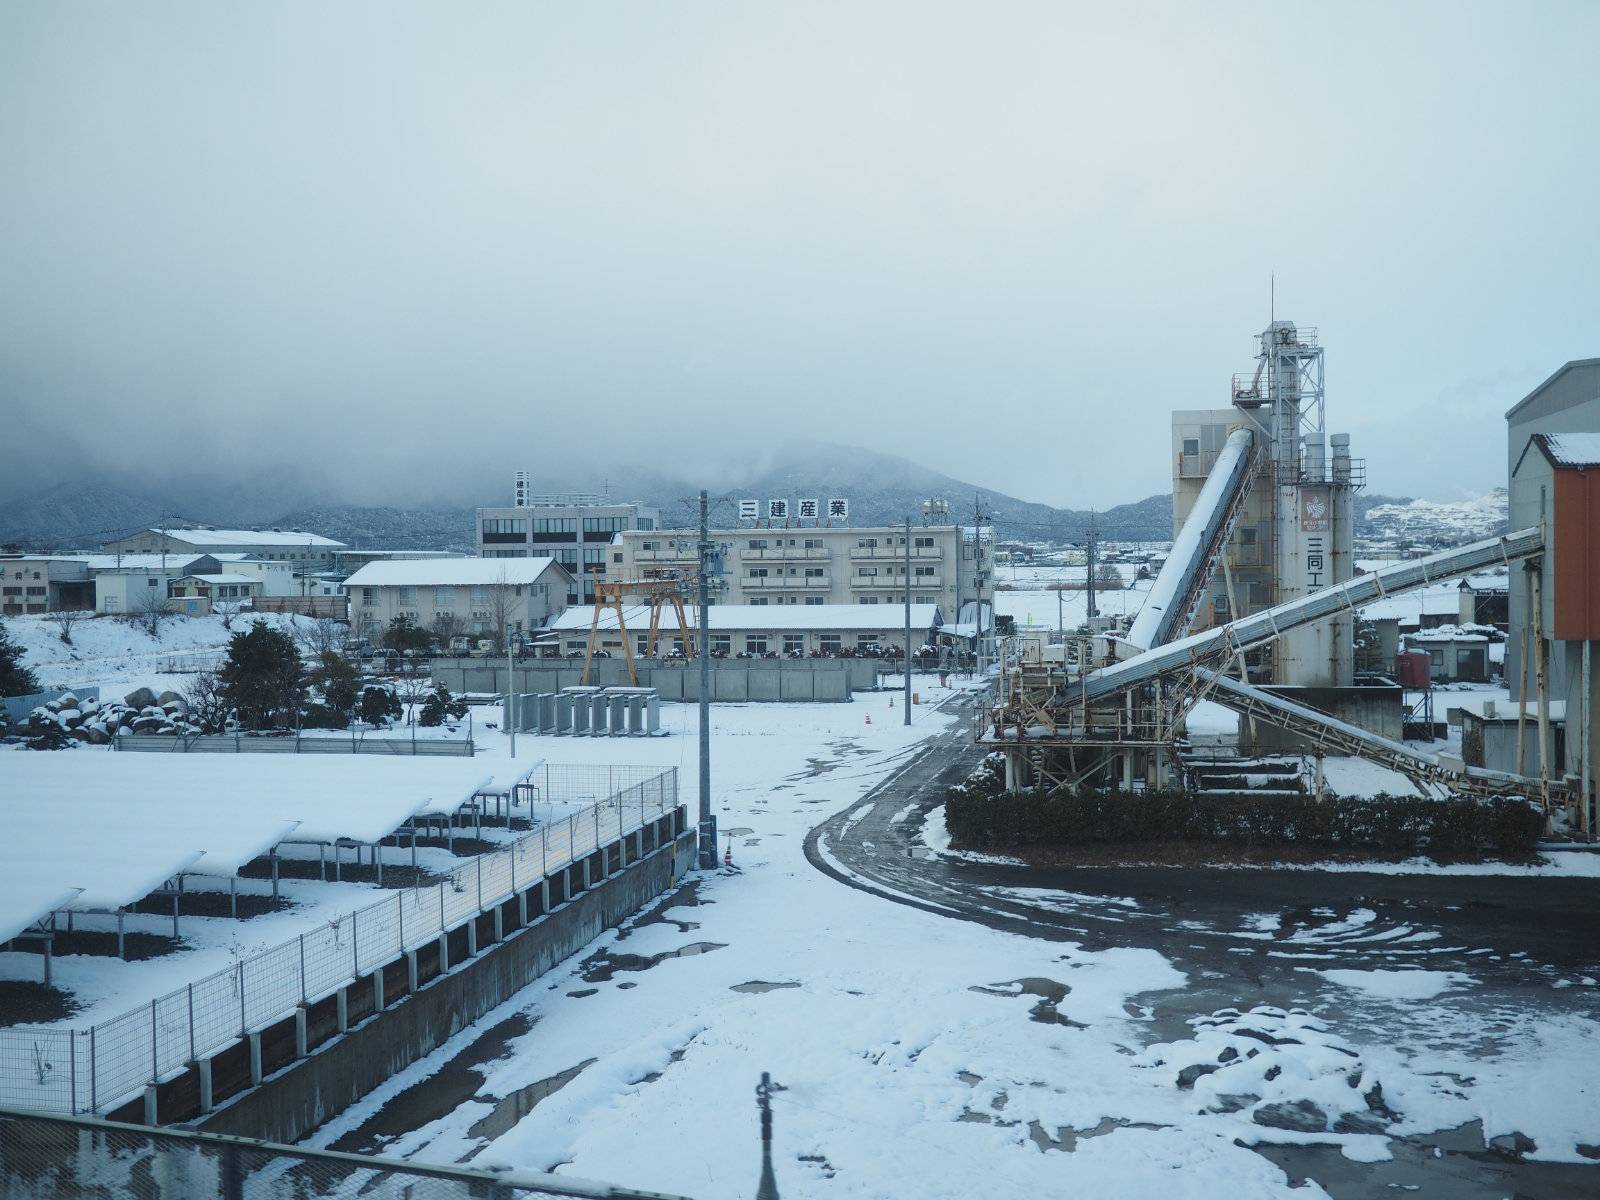 Industrial buildings in snow